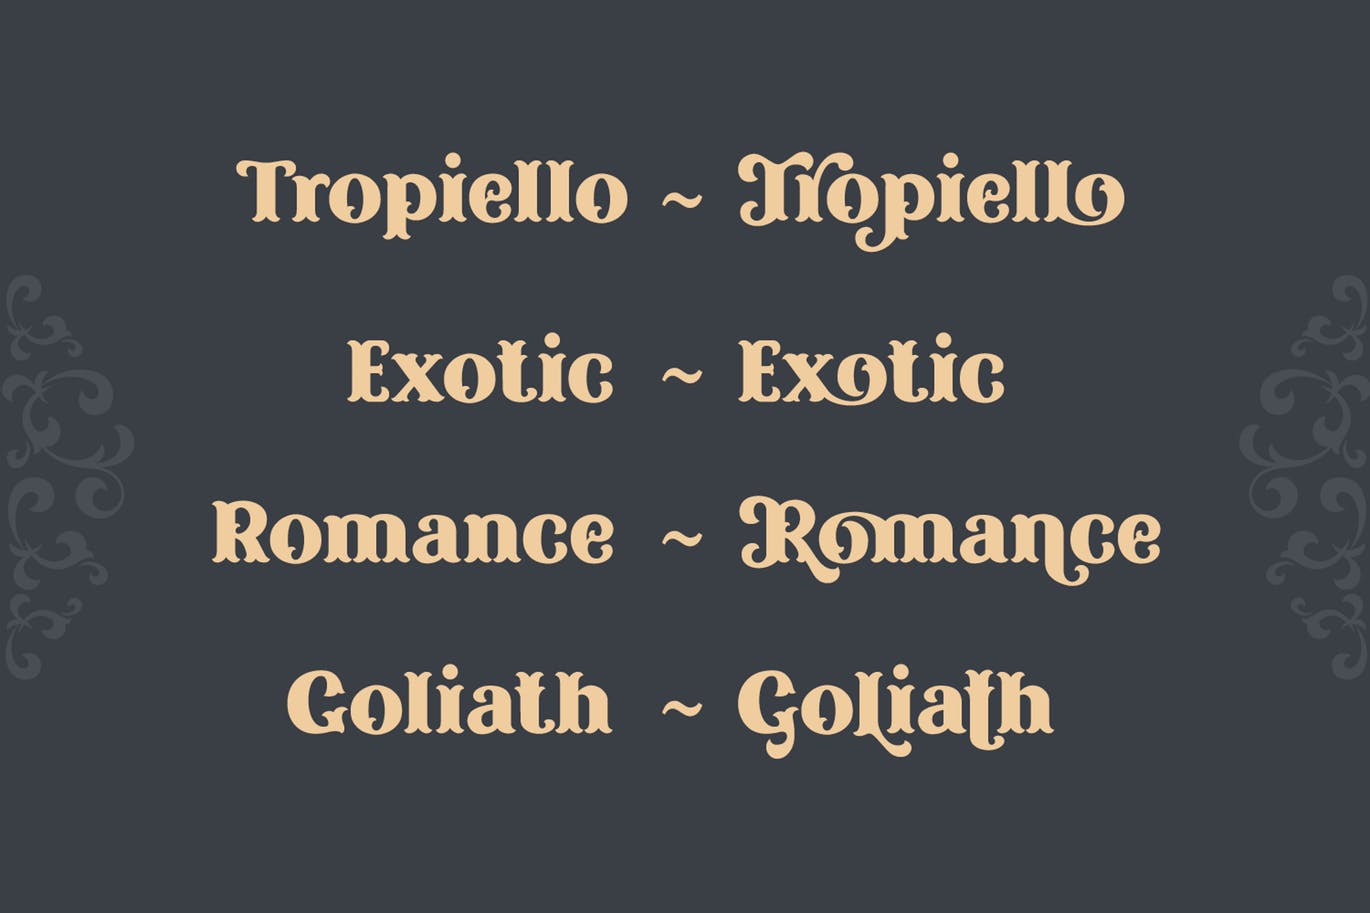 复古风格精美英文衬线装饰字体16图库精选下载 Tropiello Font插图(4)